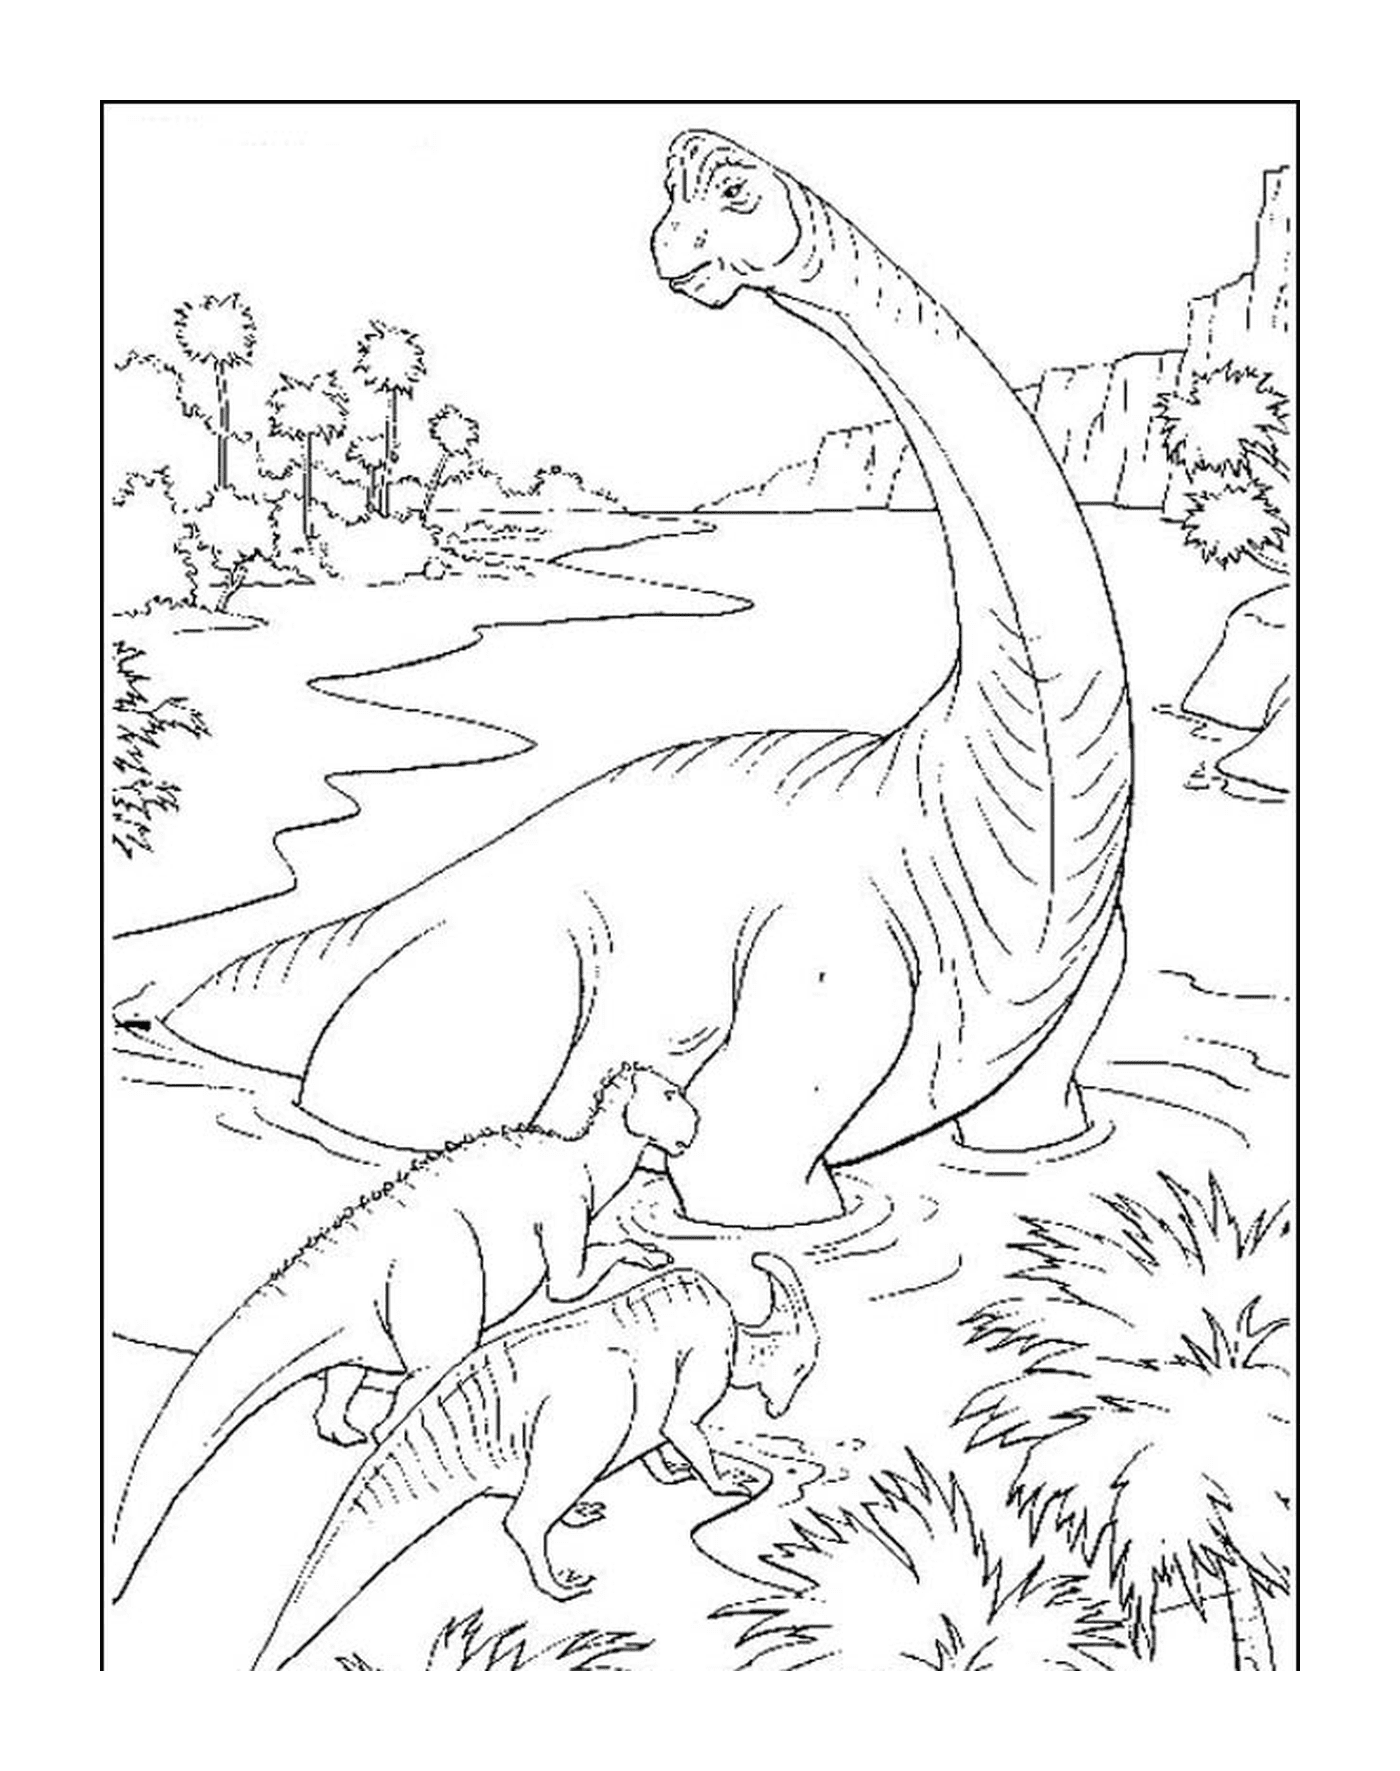  Dinossauro adulto e seu bebê adorável 